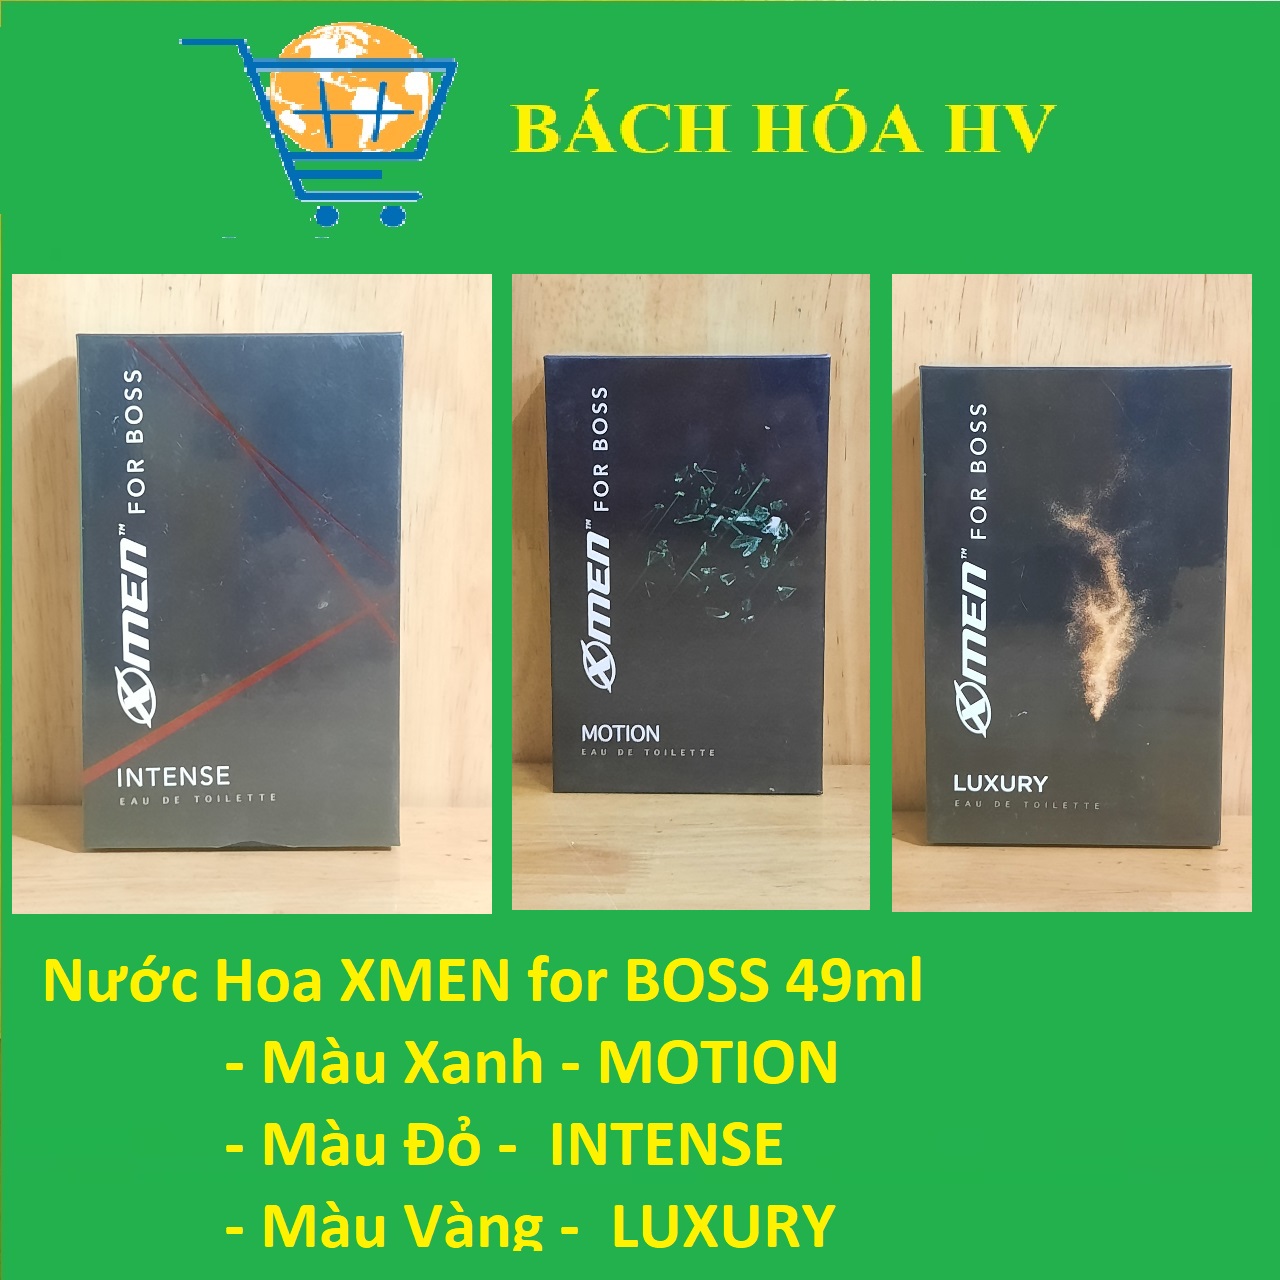 HCMNước Hoa XMEN for BOSS 49 ml - BACH HOA HV